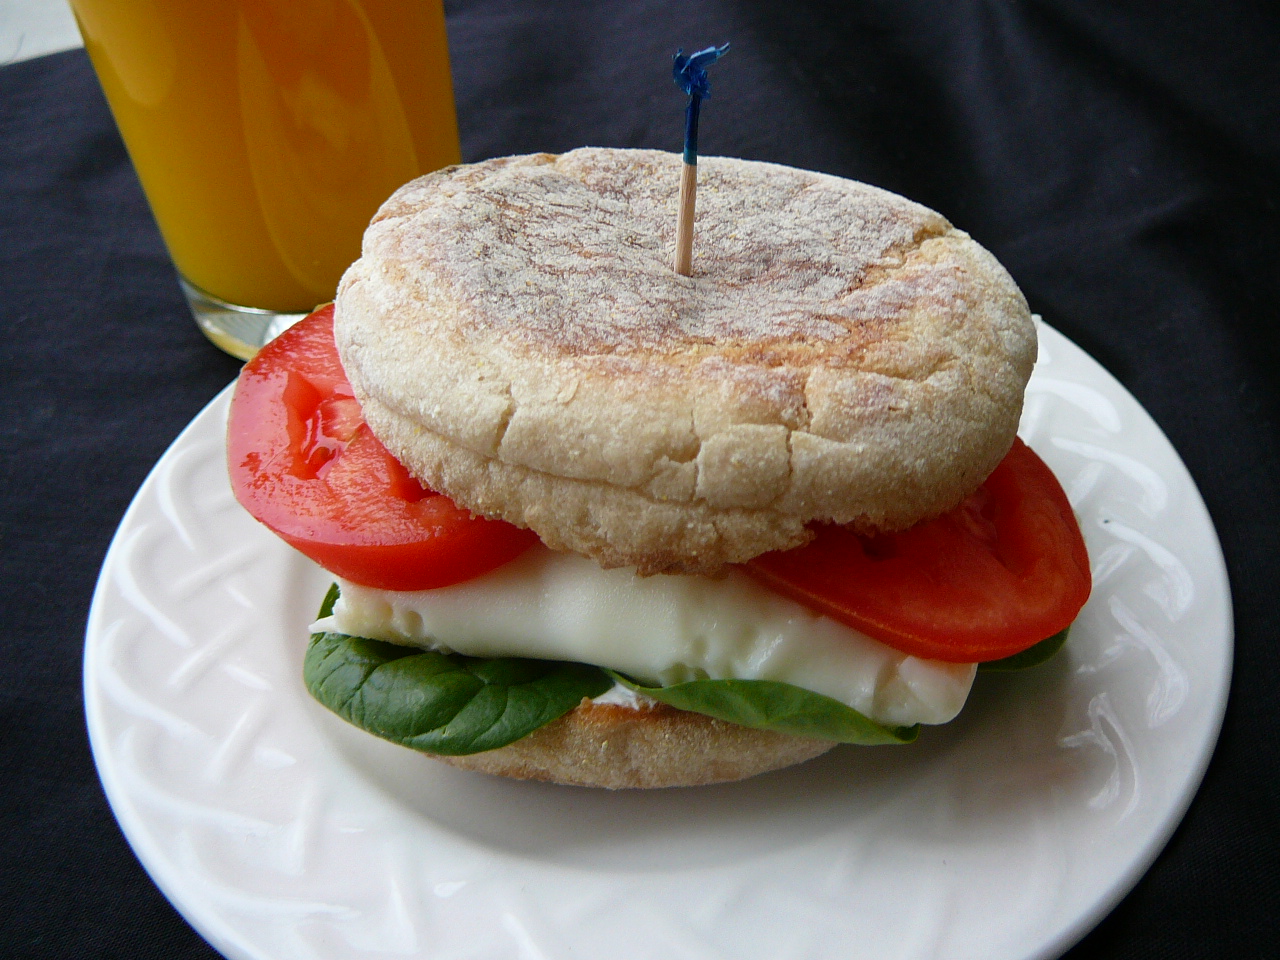 Healthy Breakfast Sandwich